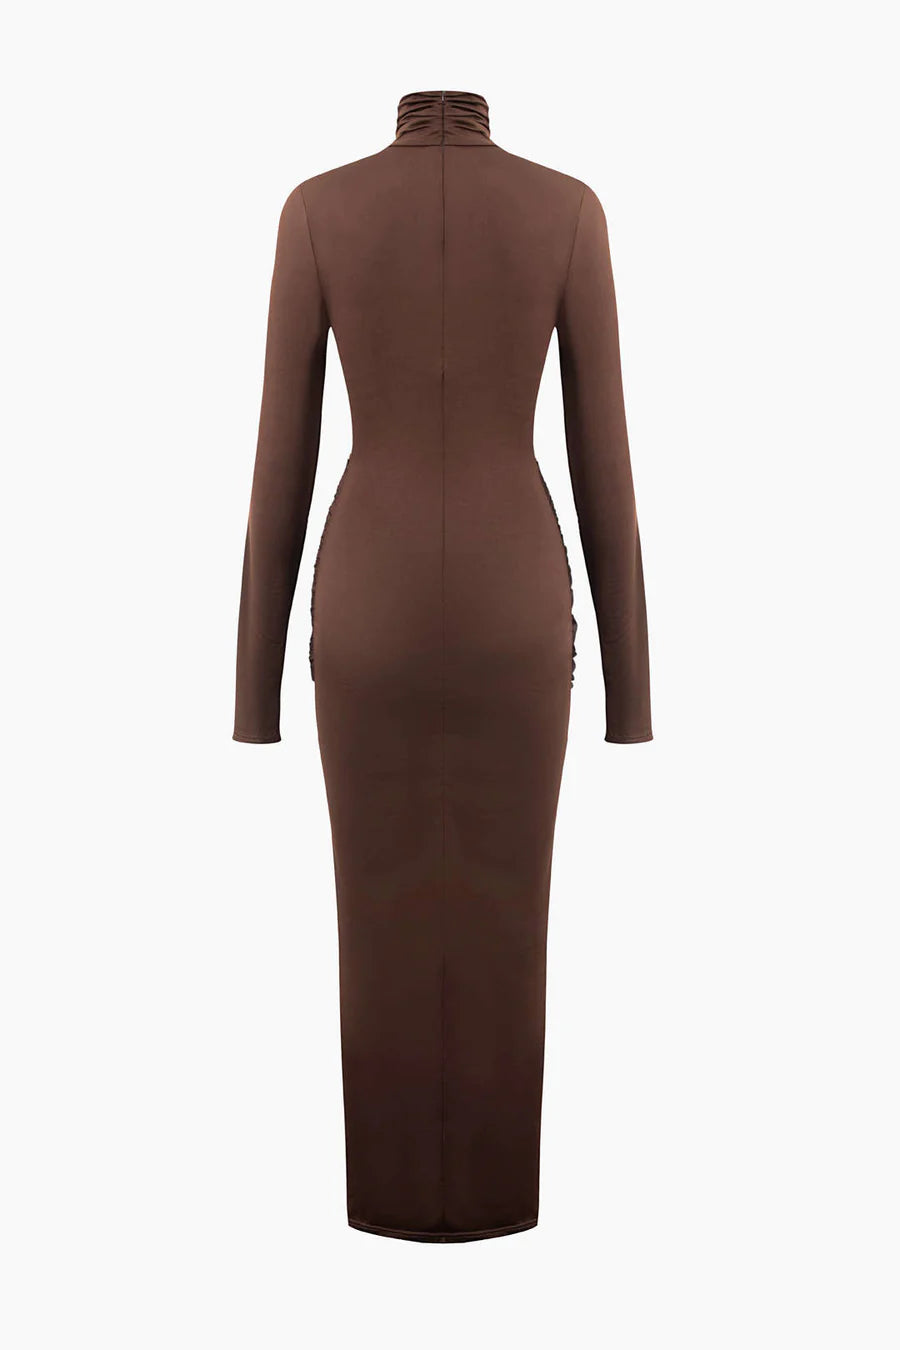 A&A Luxe High Neck Long Sleeve Maxi Bodycon Dress